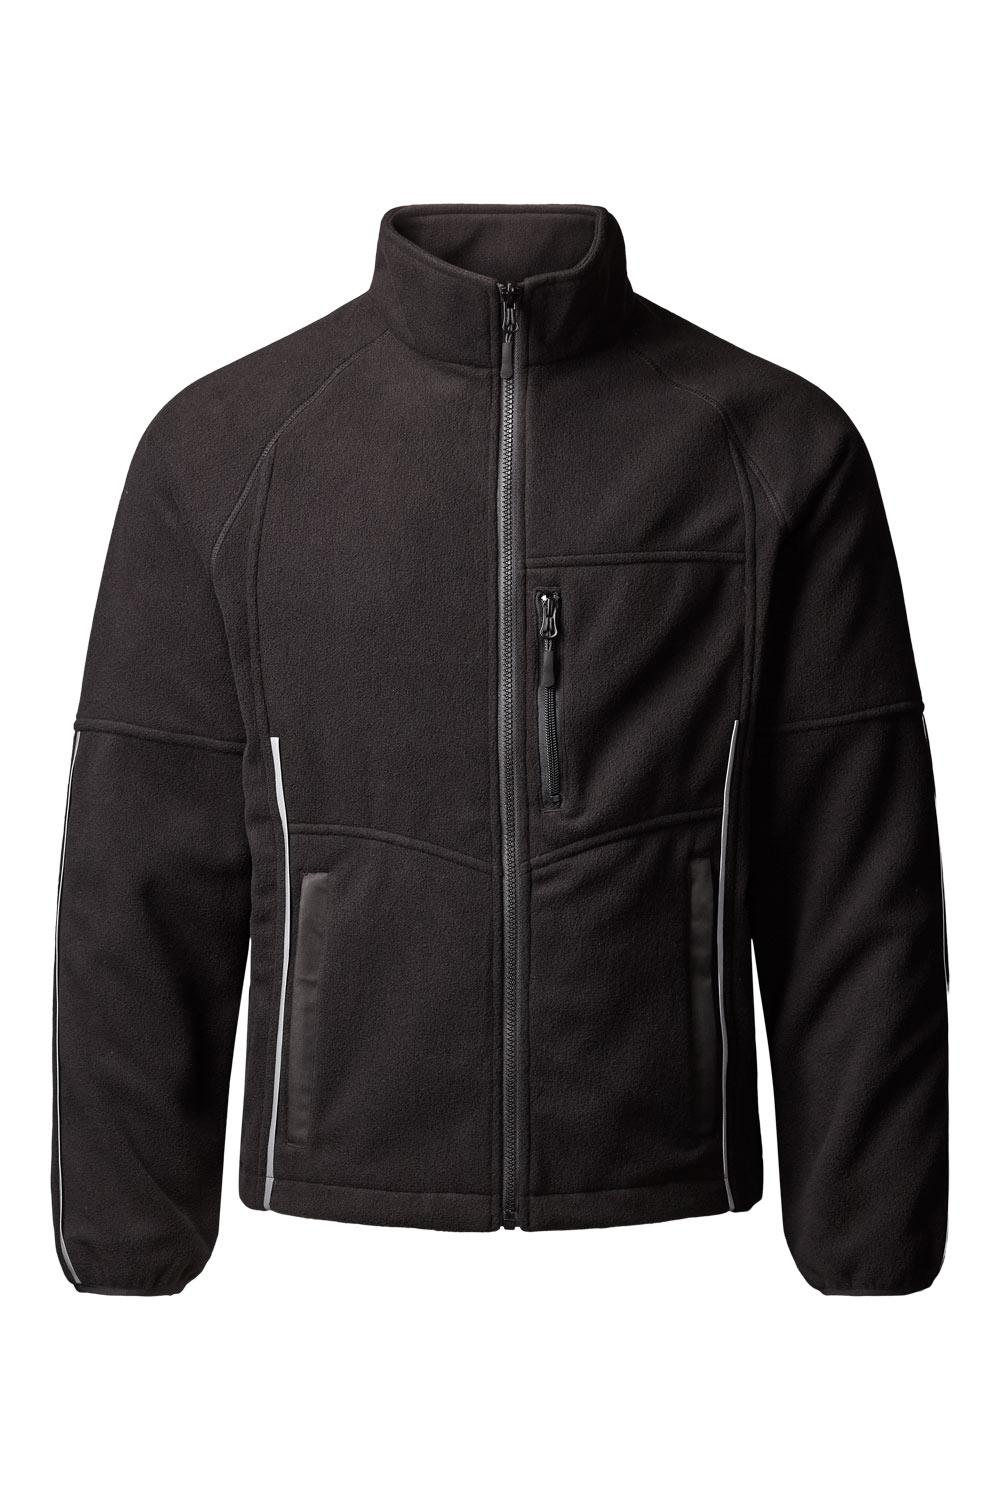 5300 Fleece Jacket Unisex - Xplor Workwear